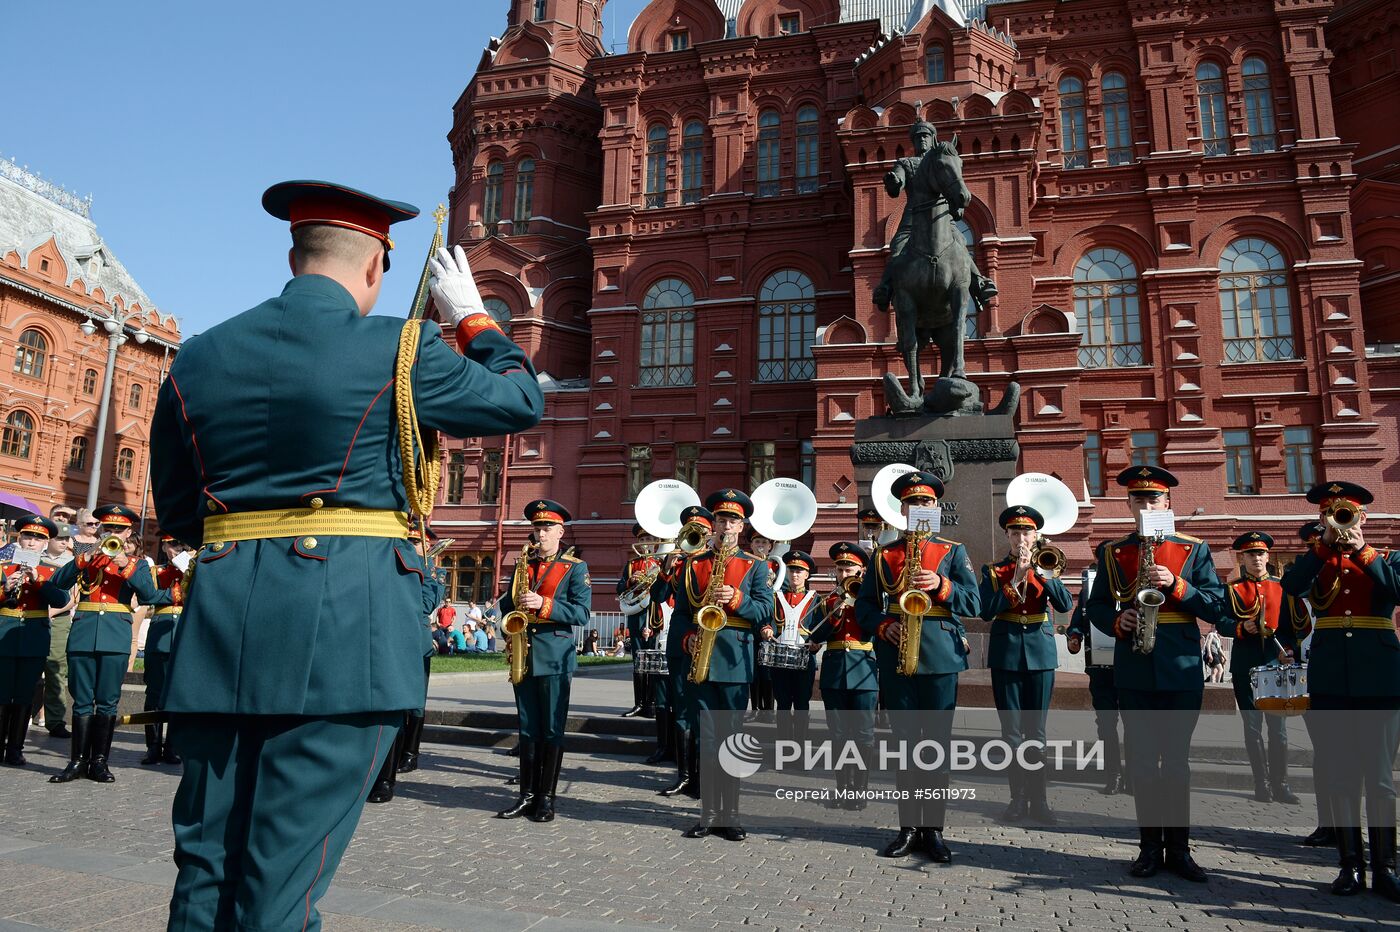 Закрытие программы "Военные оркестры в парках"